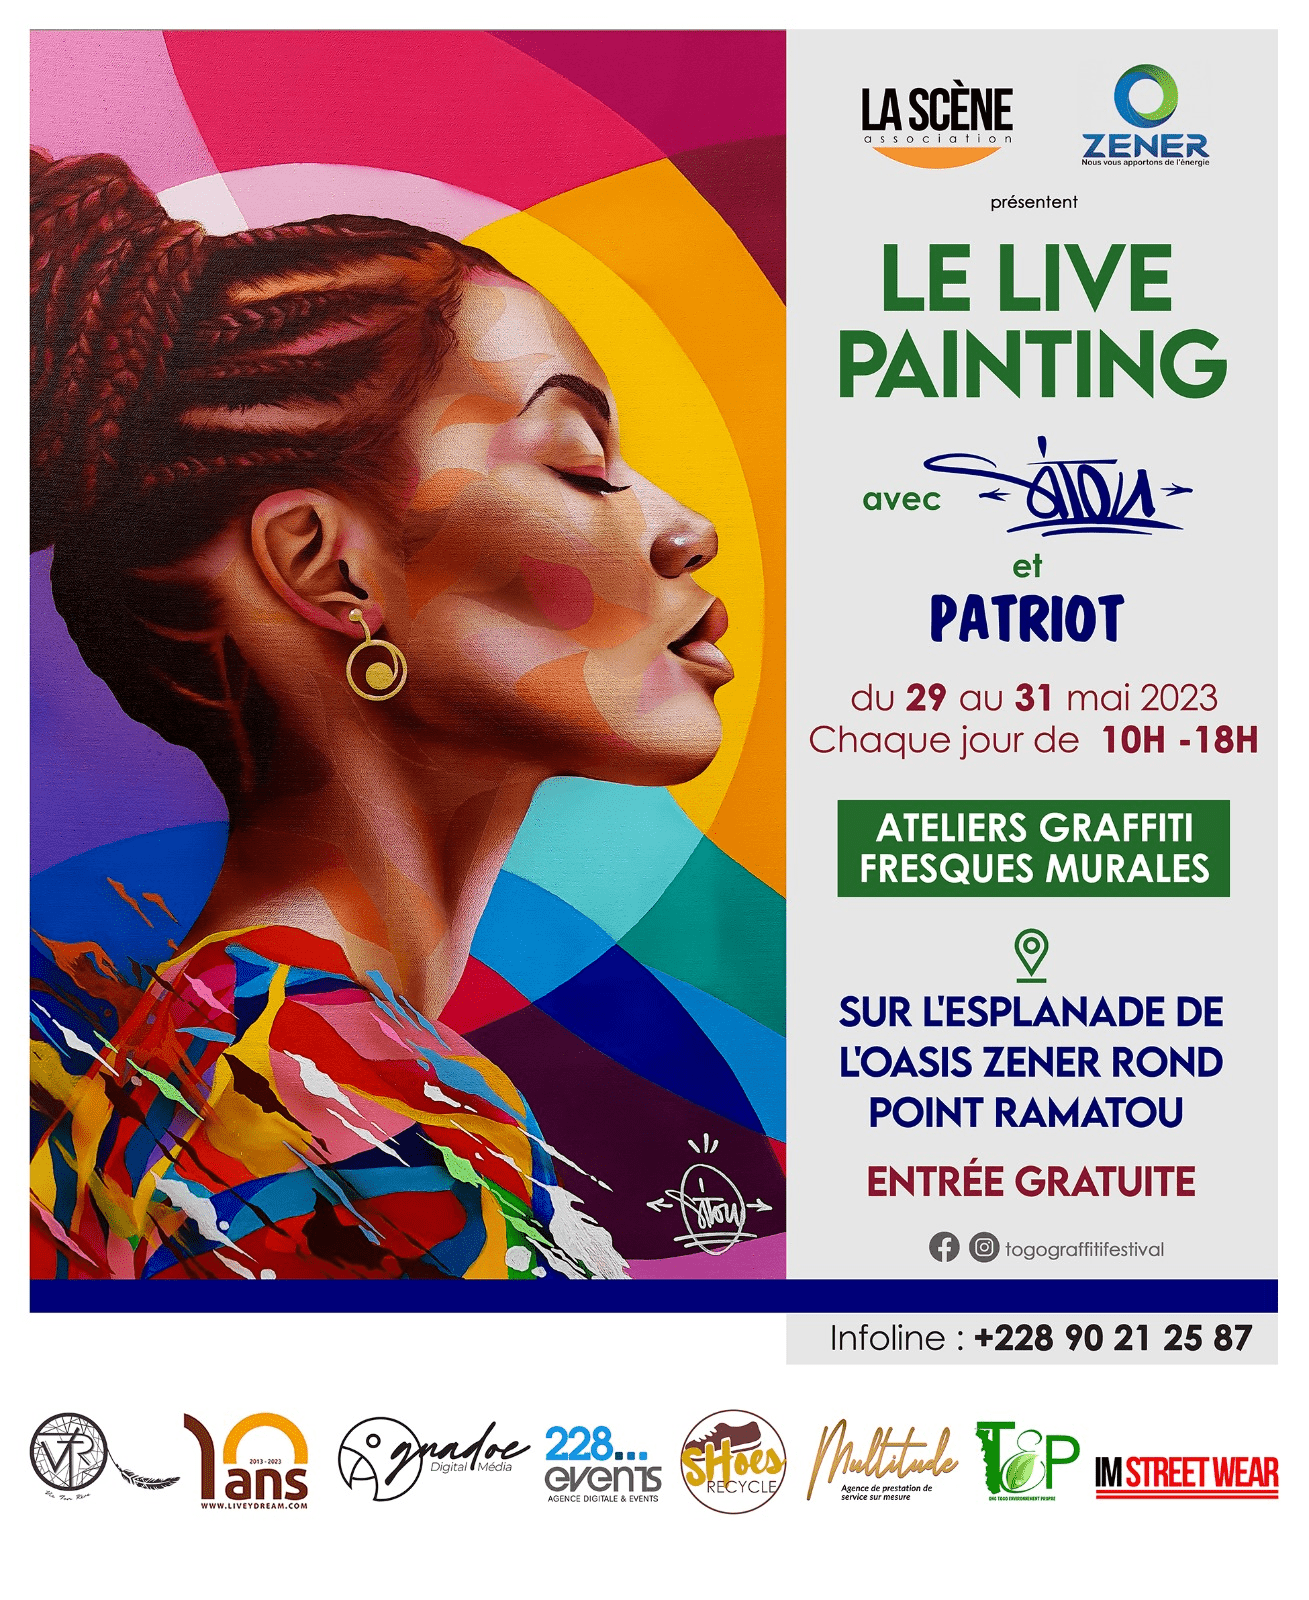 Togo - Art : L'Espace Oasis de Zener accueille du live painting